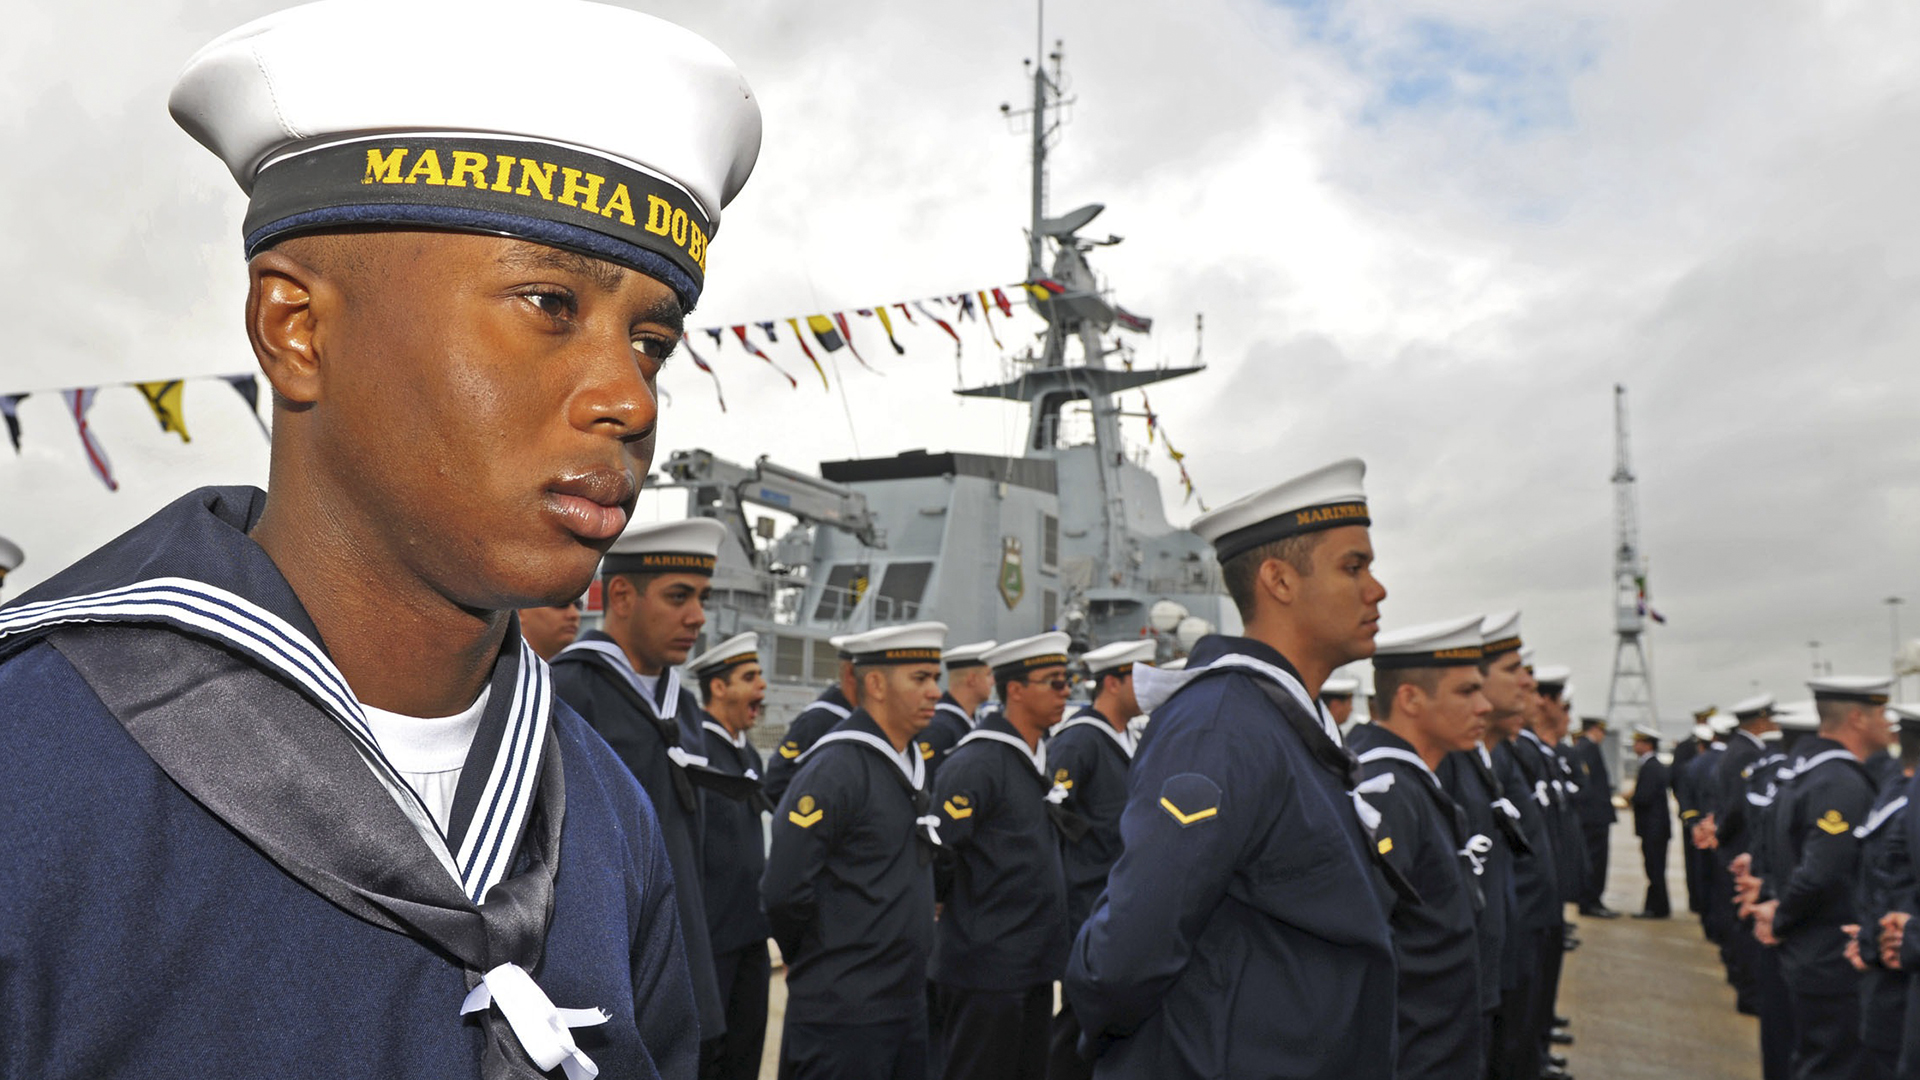 Concurso da Marinha para o Serviço Militar Voluntário tem edital publicado com 424 vagas e salários iniciais de R$10.992,04, podendo chegar a R$14.706,71